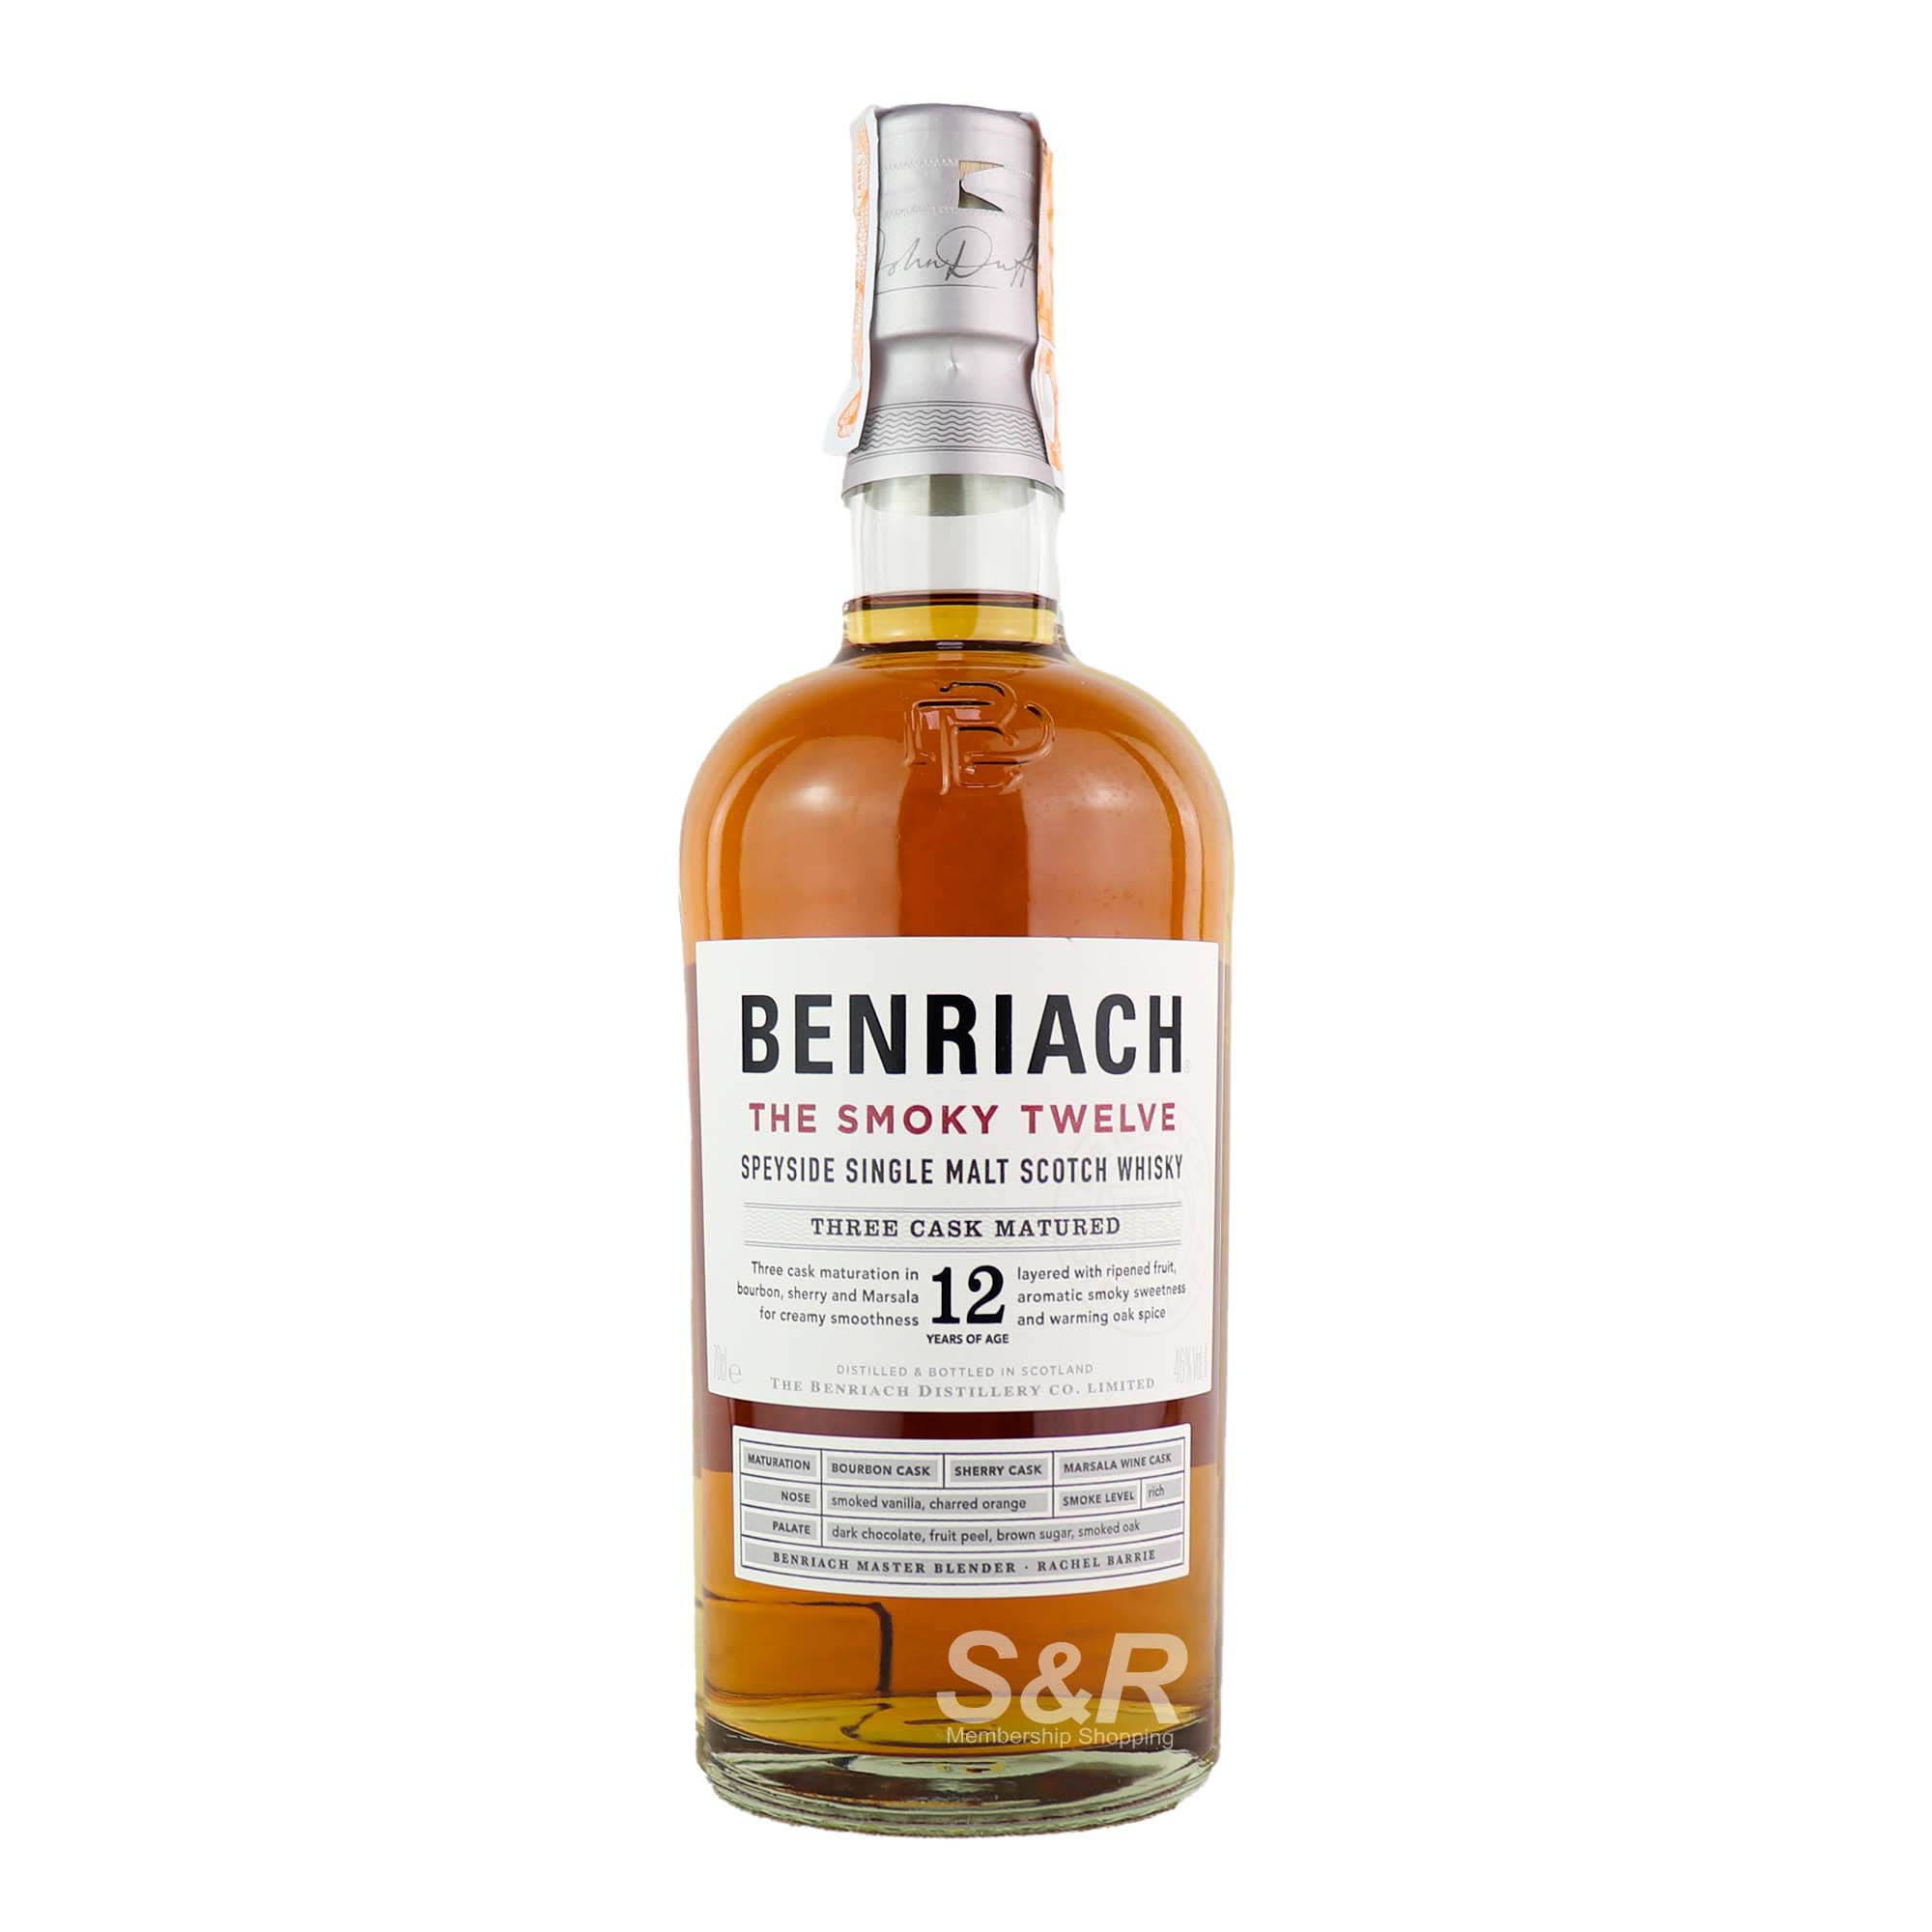 Benriach The Smoky Twelve Speyside Single Malt Scotch Whisky 700mL